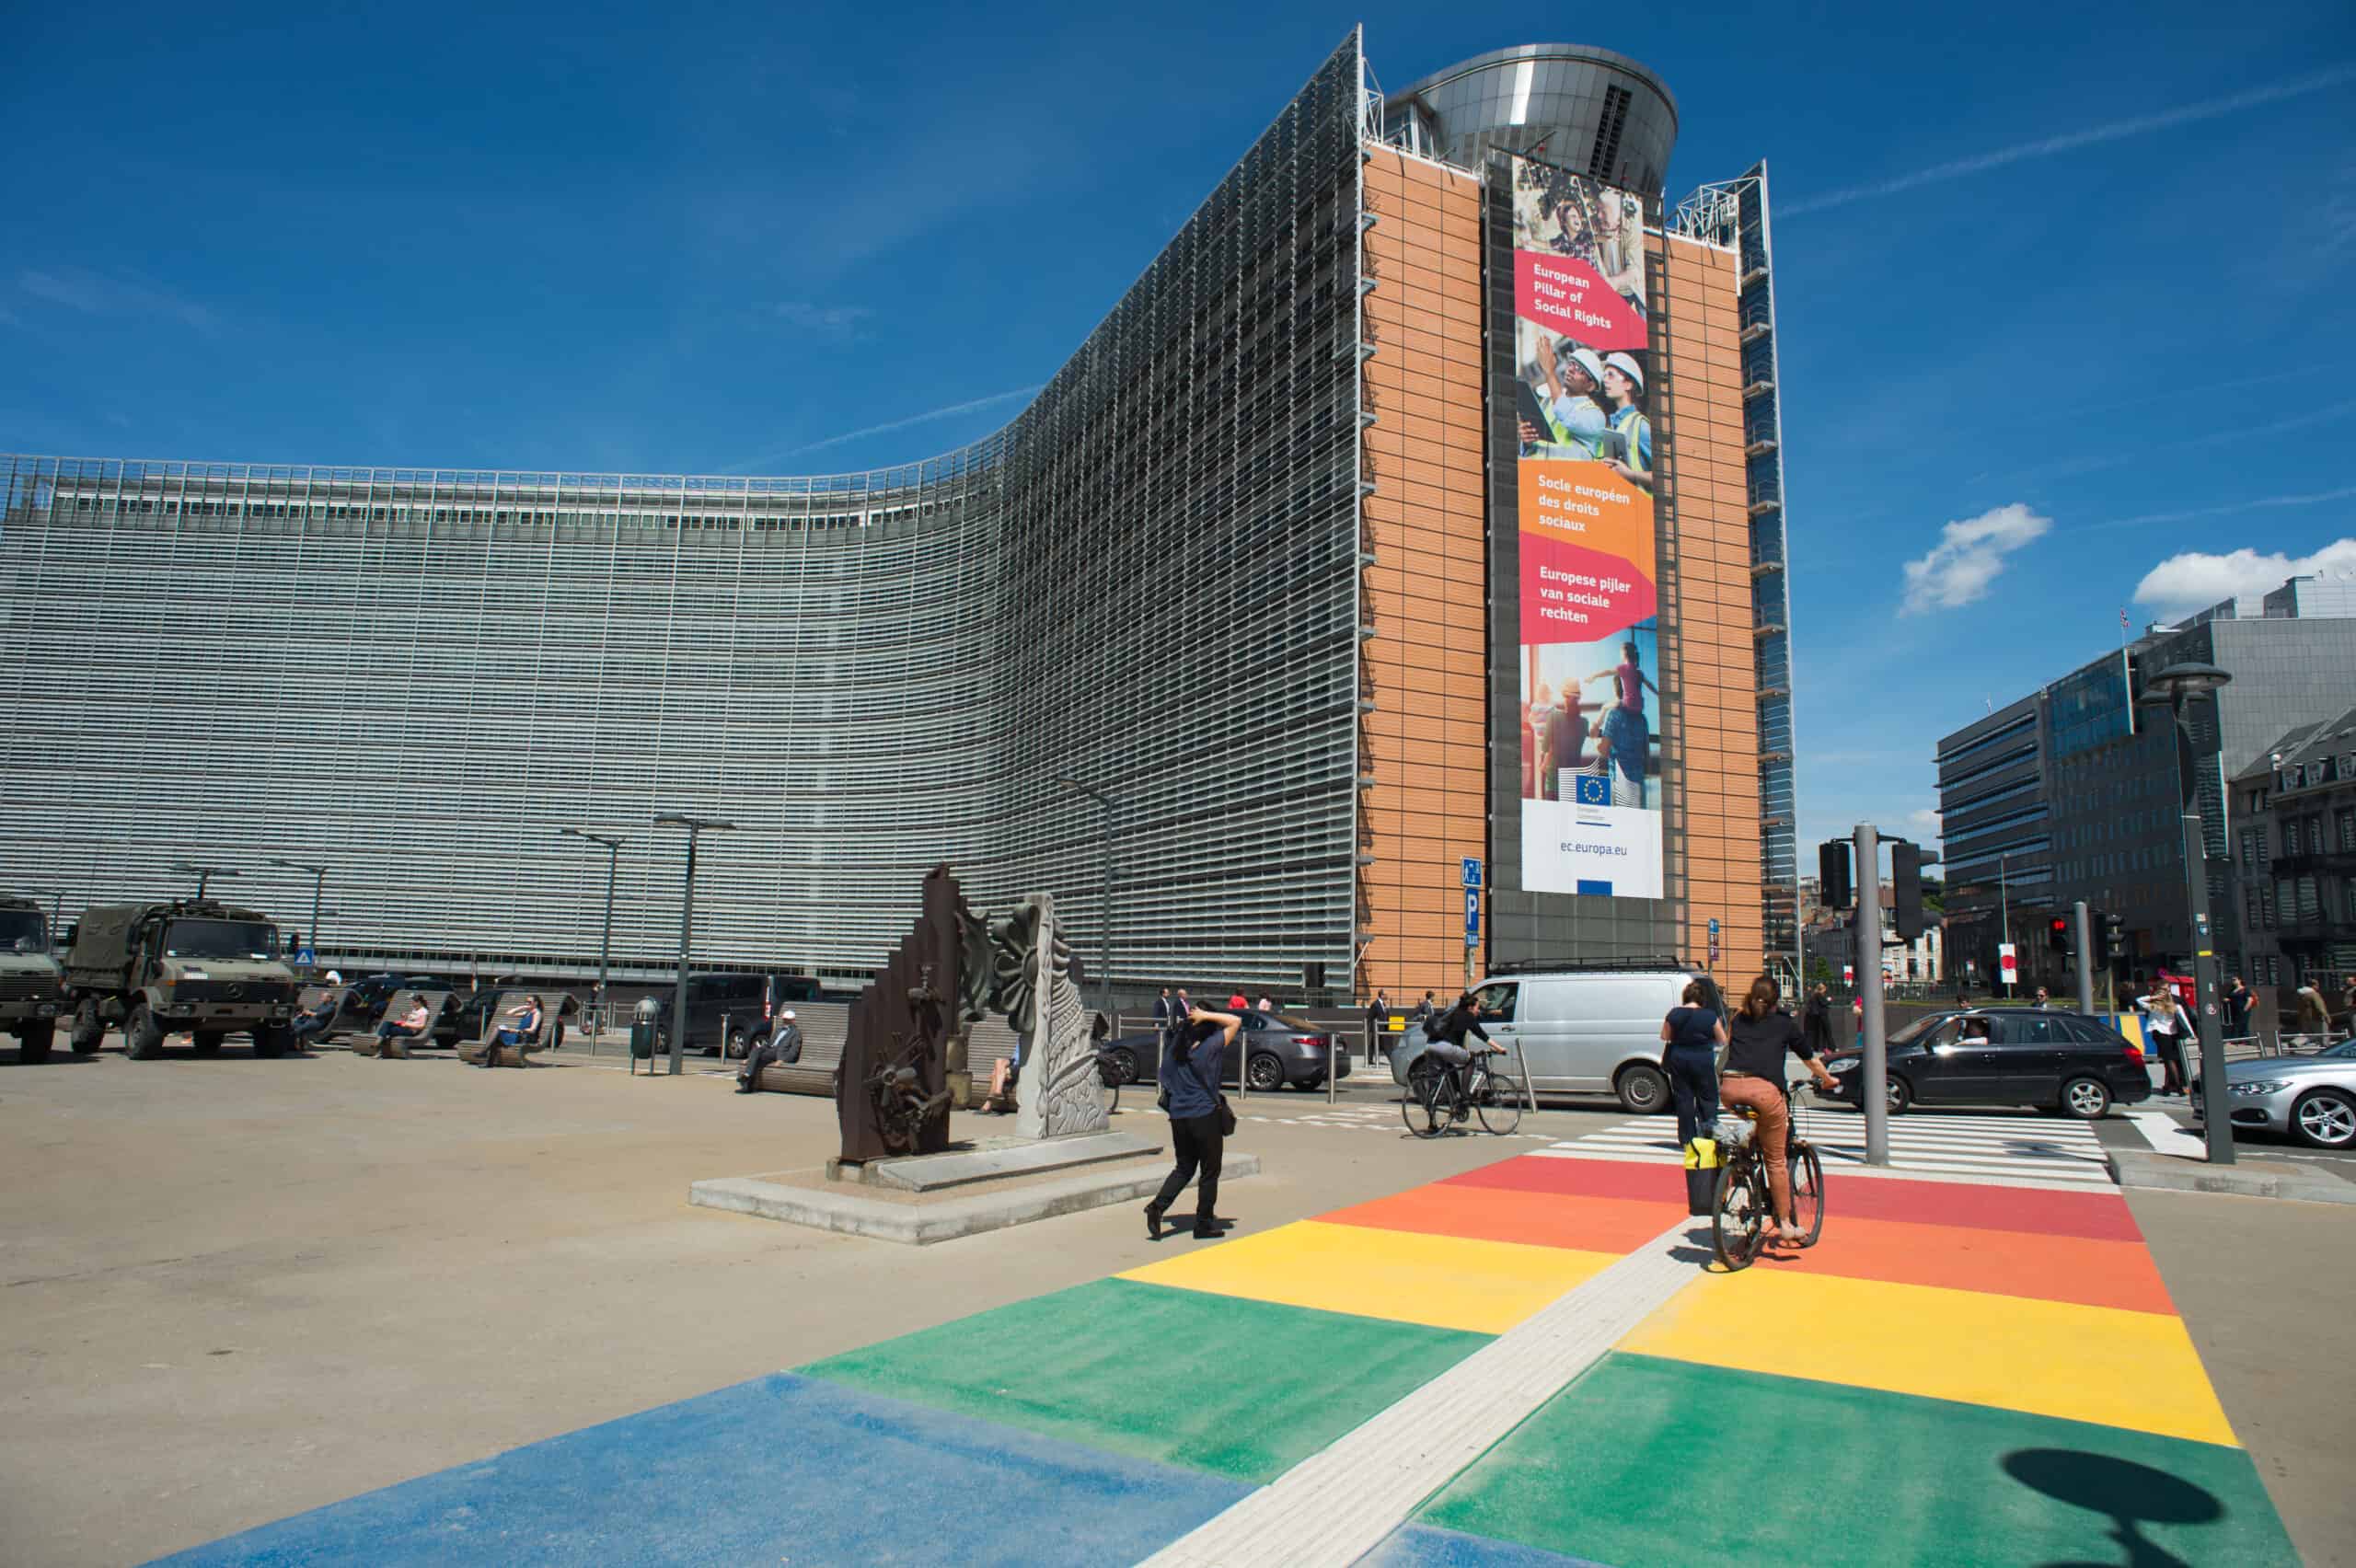 Přečtete si více ze článku Evropská unie stále hledá cestu v přijetí směrnice bojující proti diskriminaci